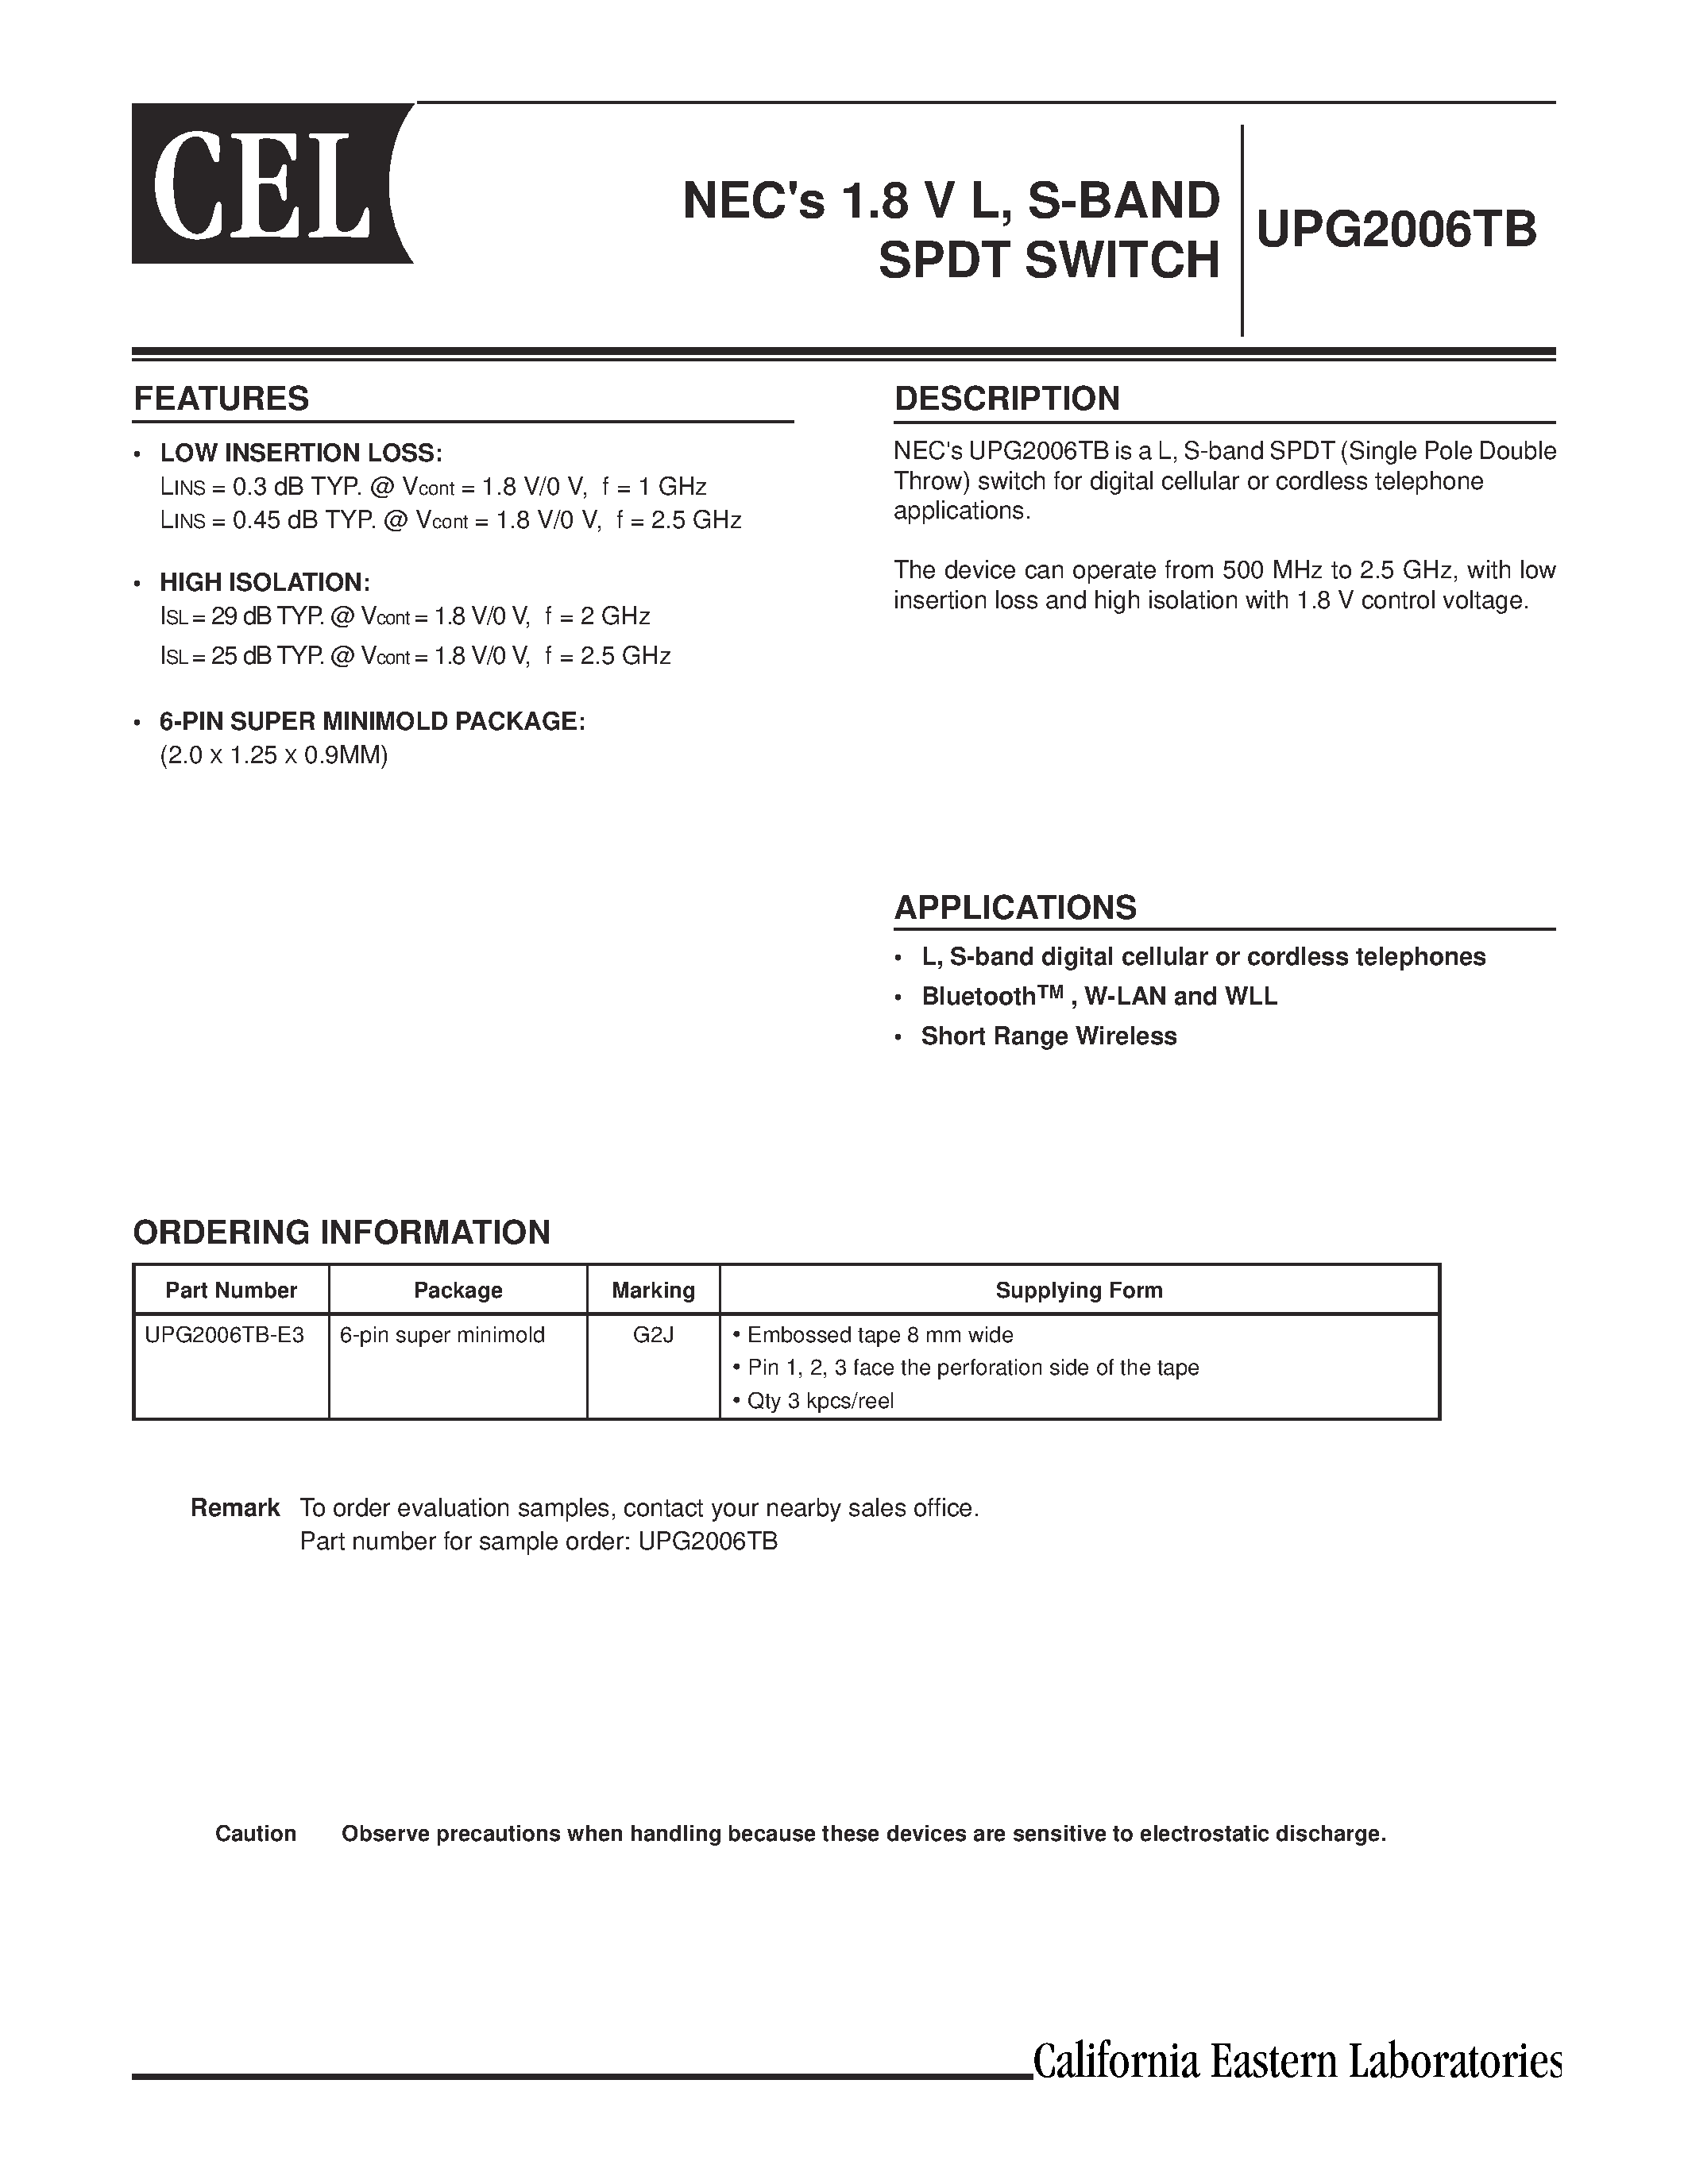 Даташит UPG2006TB-E3 - NECs 1.8 V L/ S-BAND SPDT SWITCH страница 1